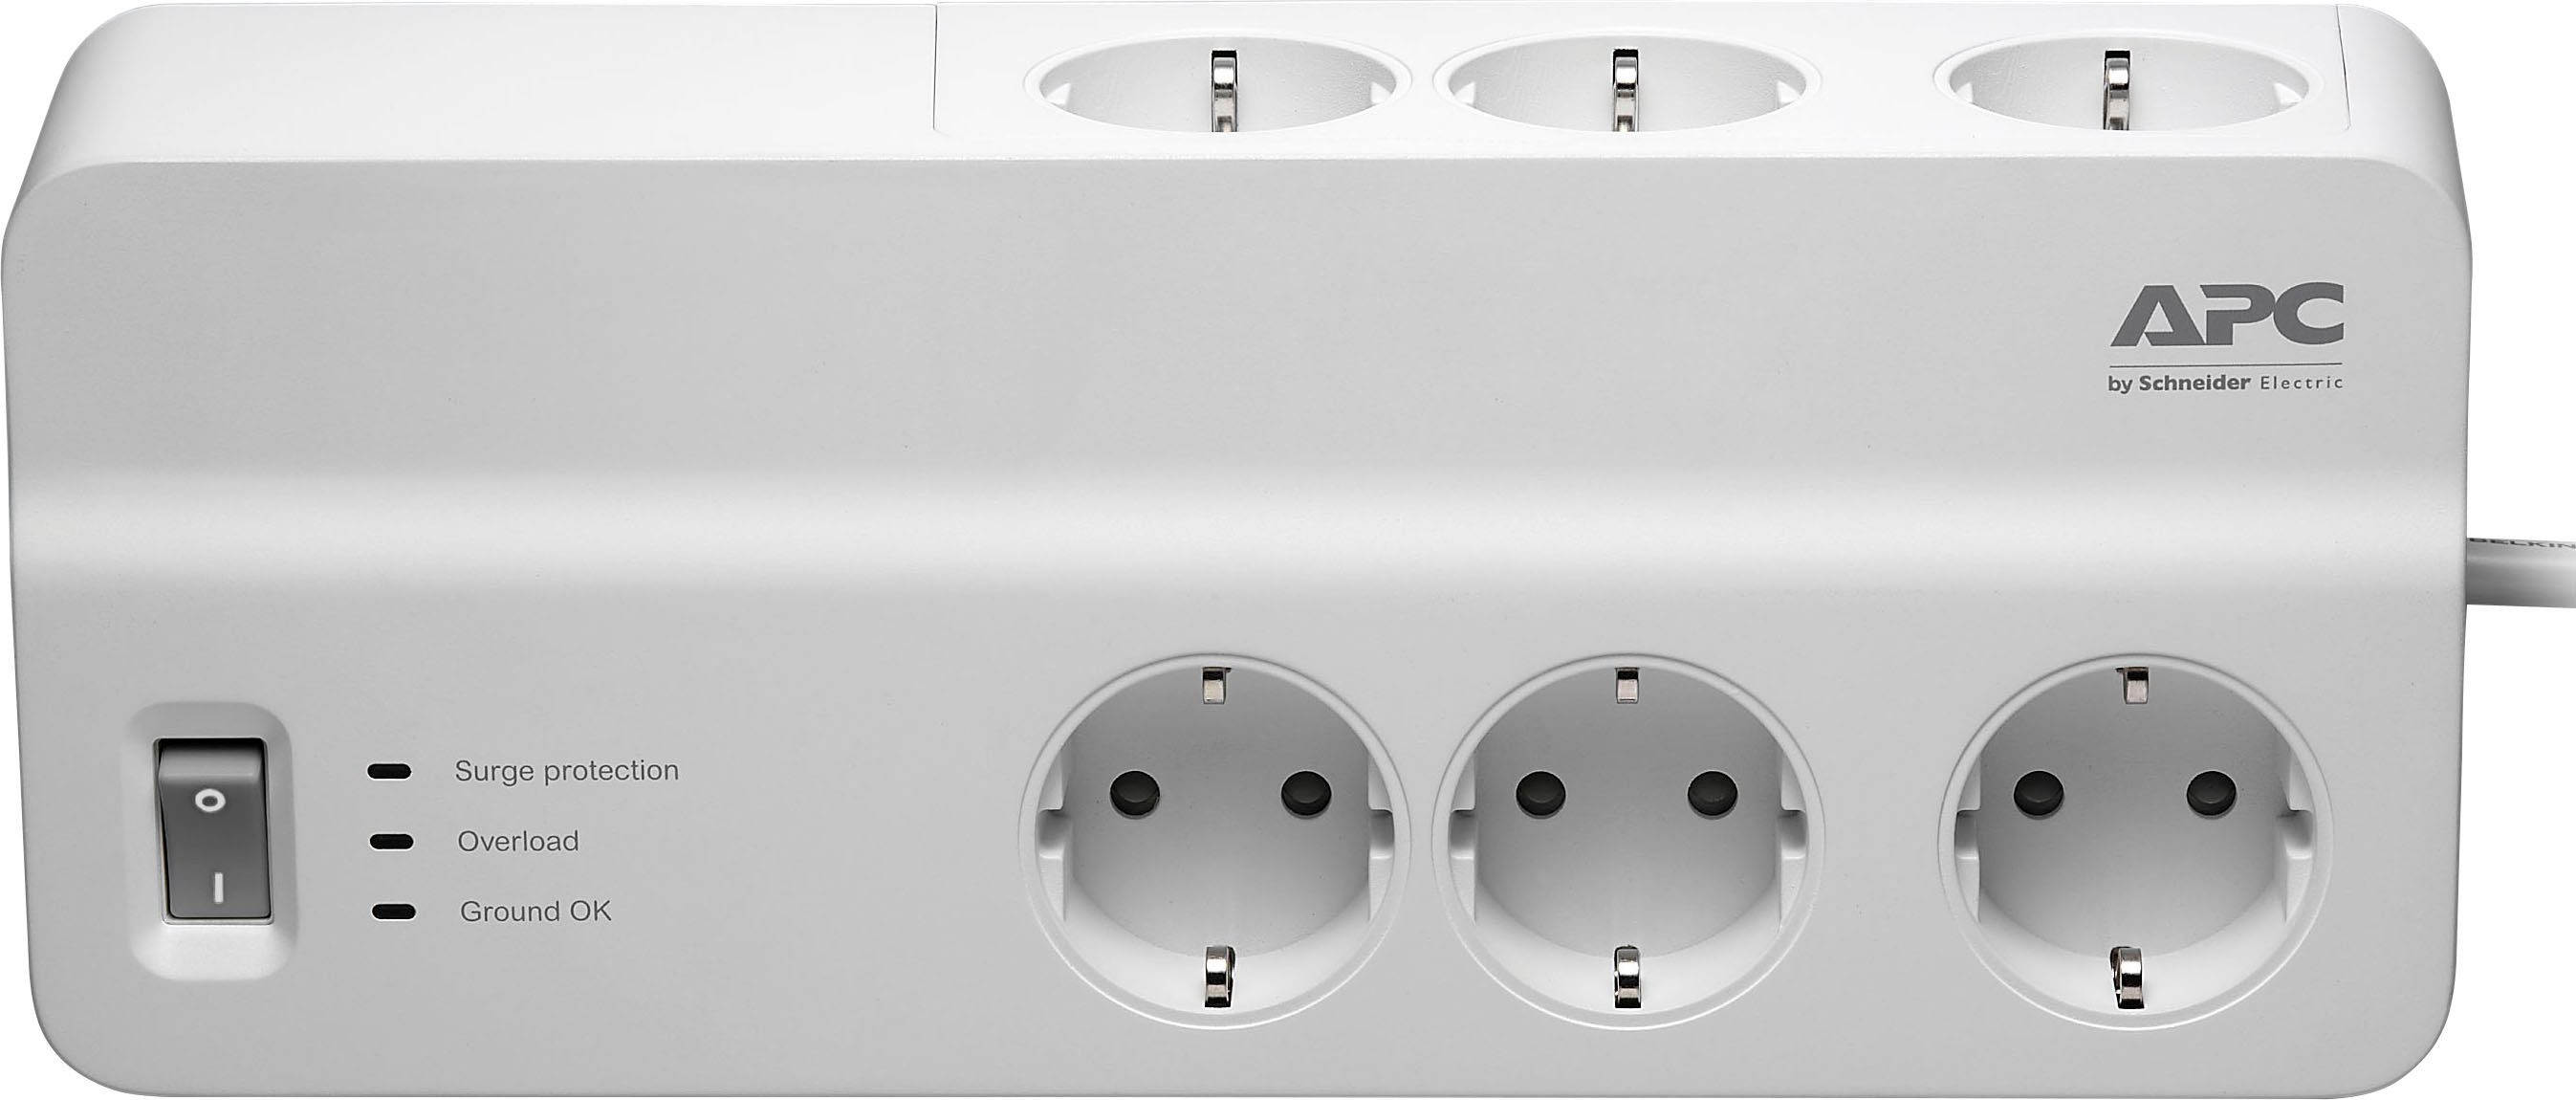 PM6-GR 6-fach Ausschalter, USB-Anschlüsse, 2 (Ein- Steckdosenleiste Überspannungsschutz, APC Kabellänge m) / LED-Statusanzeige,